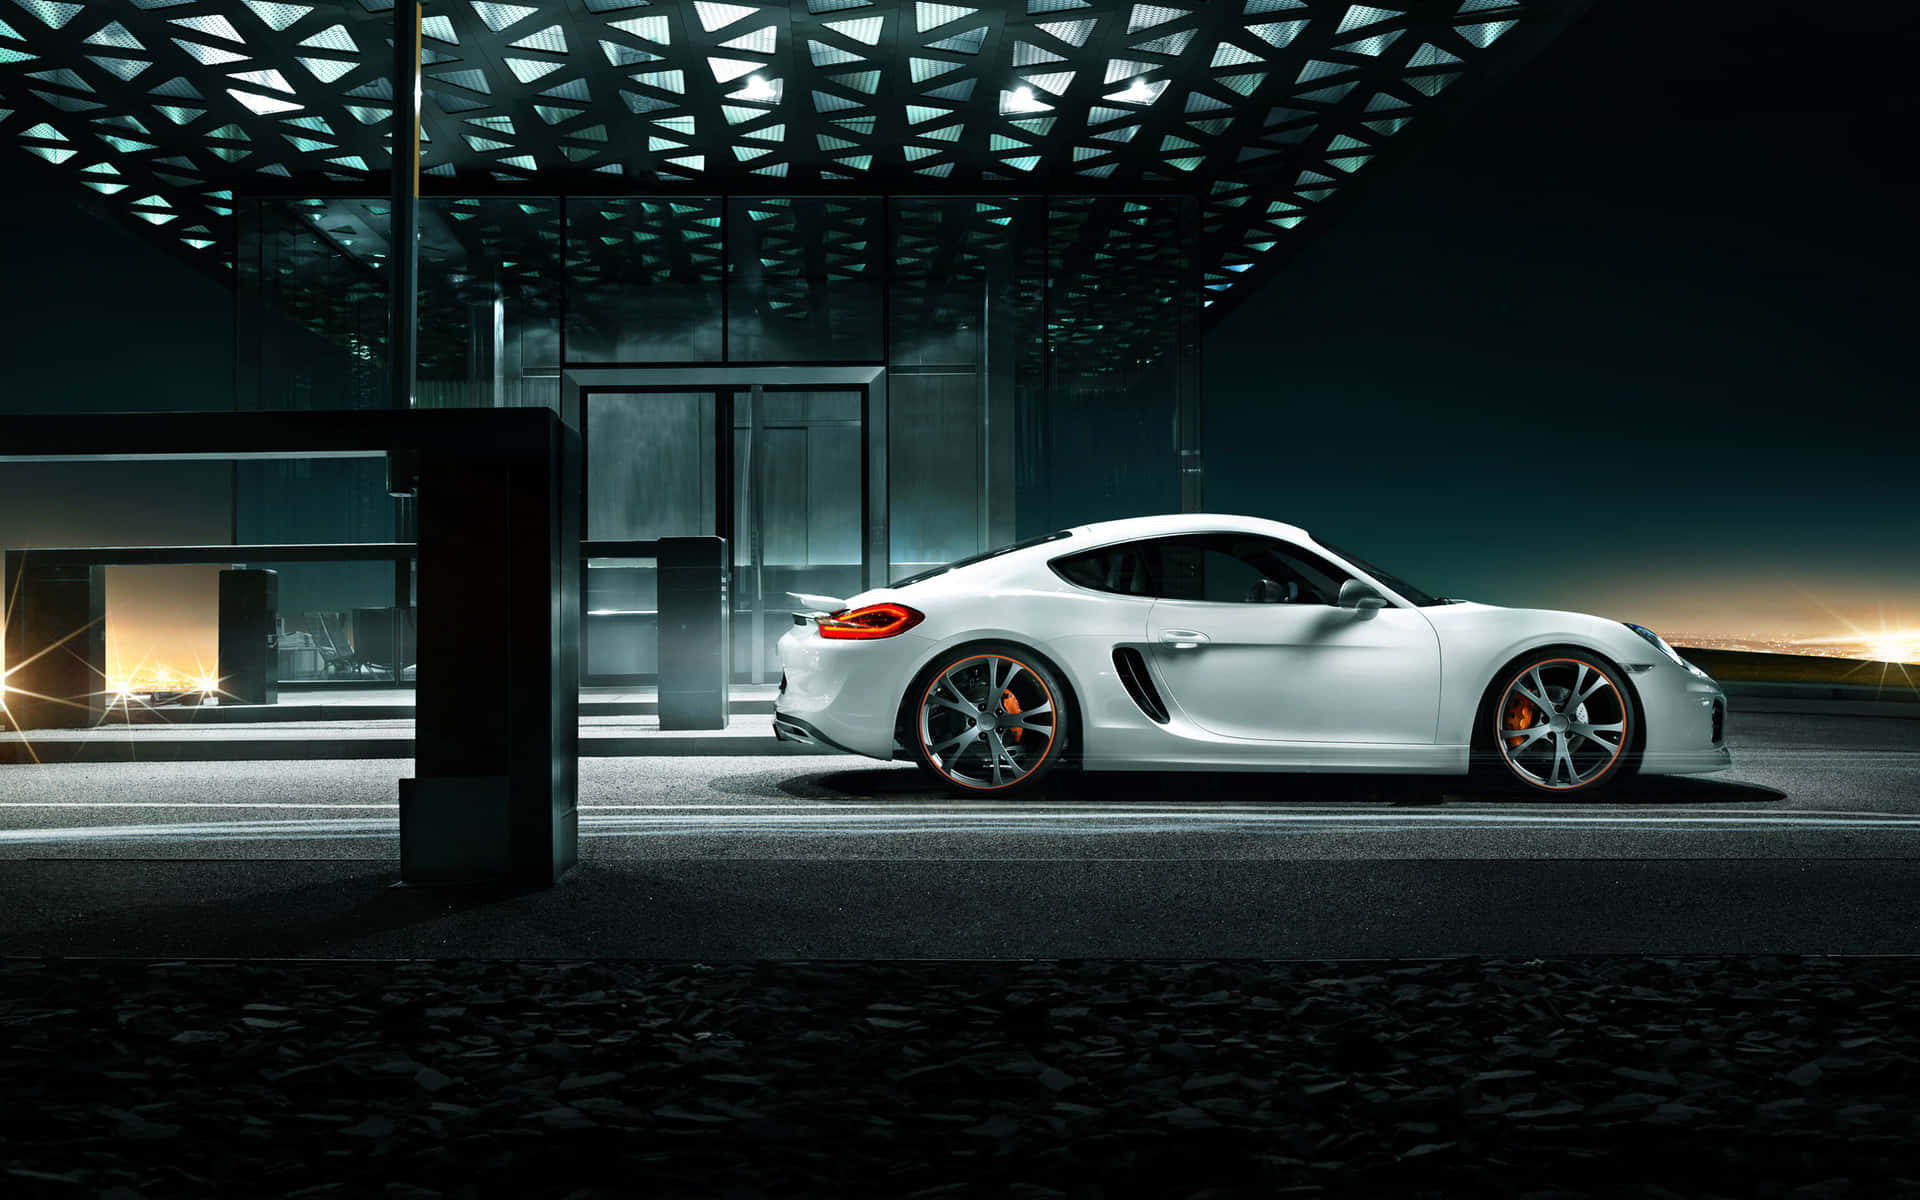 Unasplendida Auto Sportiva Porsche Catturata In Movimento Su Un Panoramico Autostrada.